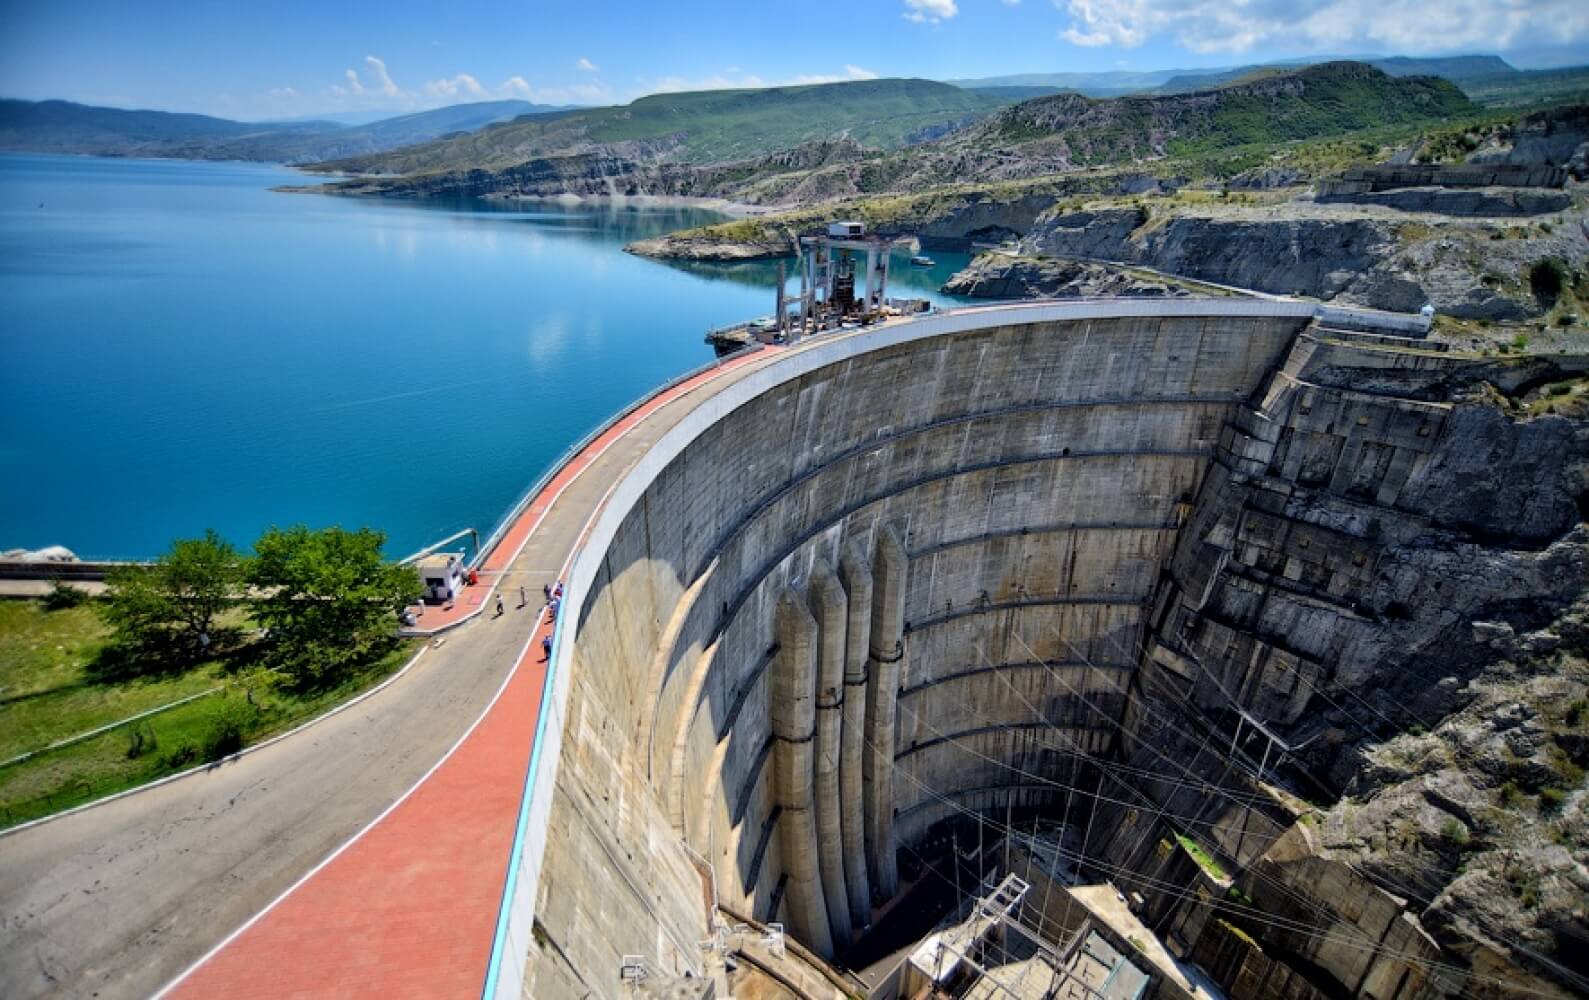 Какие гэс в россии самые крупные. Чиркейской ГЭС - - самая высокая арочная плотина в России -. Чиркейская ГЭС стройка. Чиркейская ГЭС В Дагестане. Чиркейская плотина.